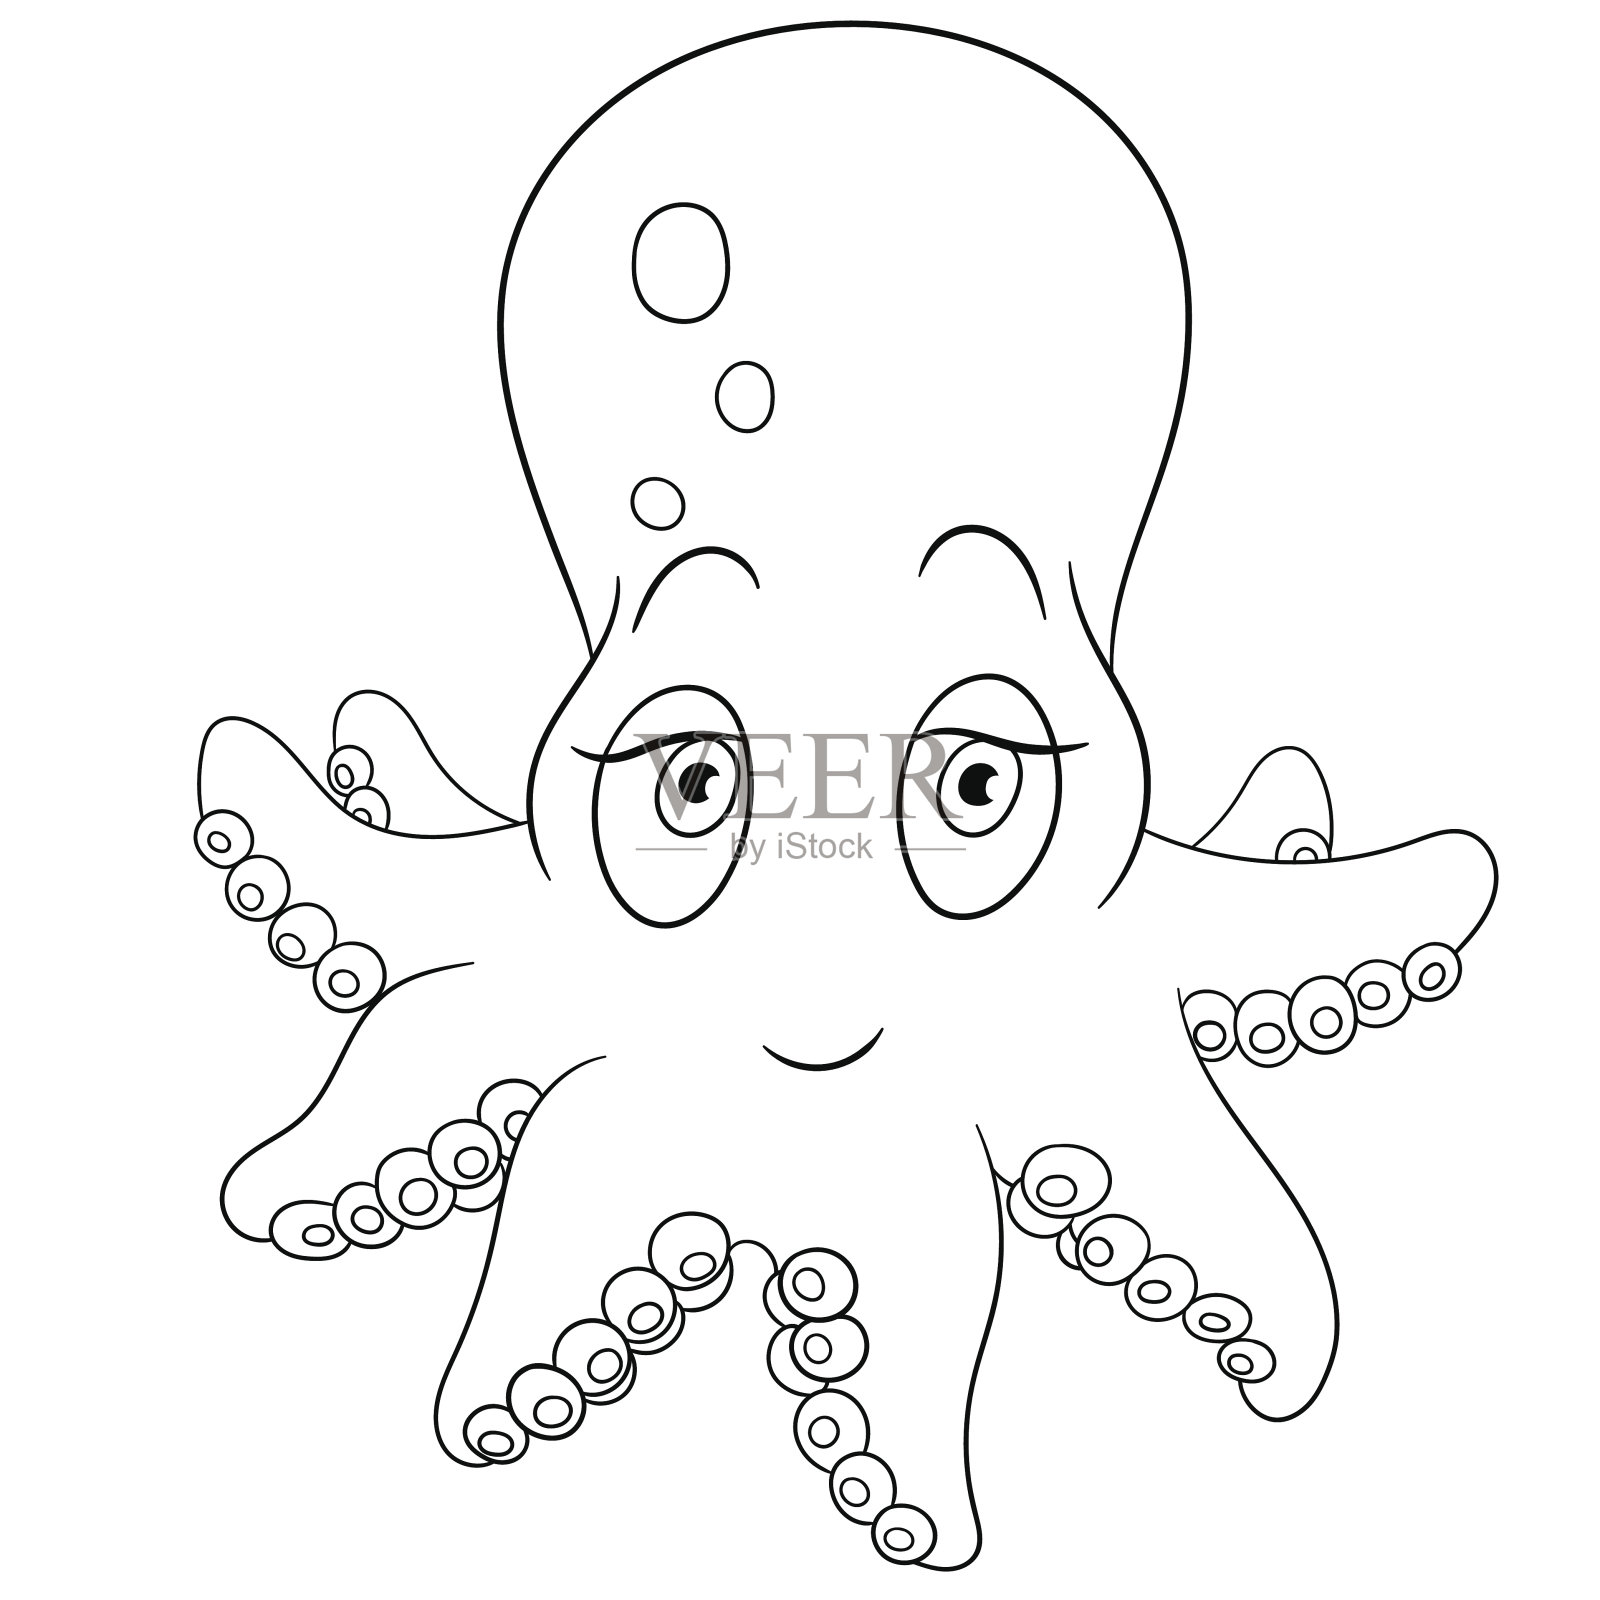 迷人的章鱼插画图片素材